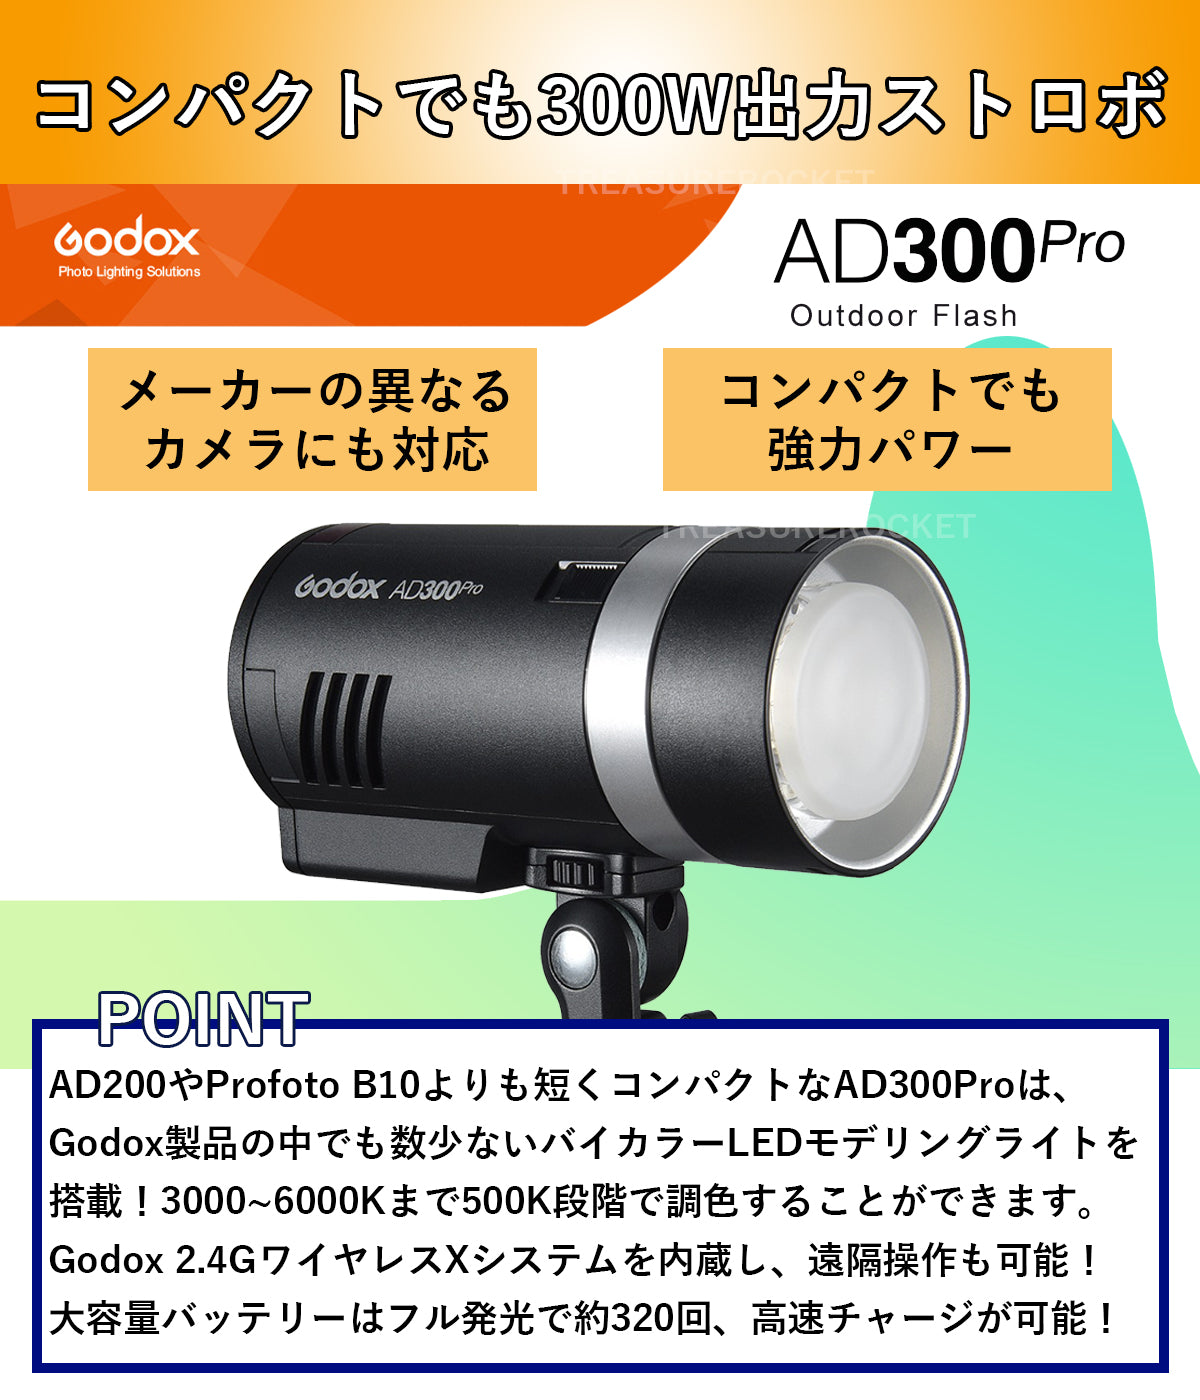 国内正規代理店] Godox AD300Pro+S2ブラケットセット3 00W 3000-6000K 